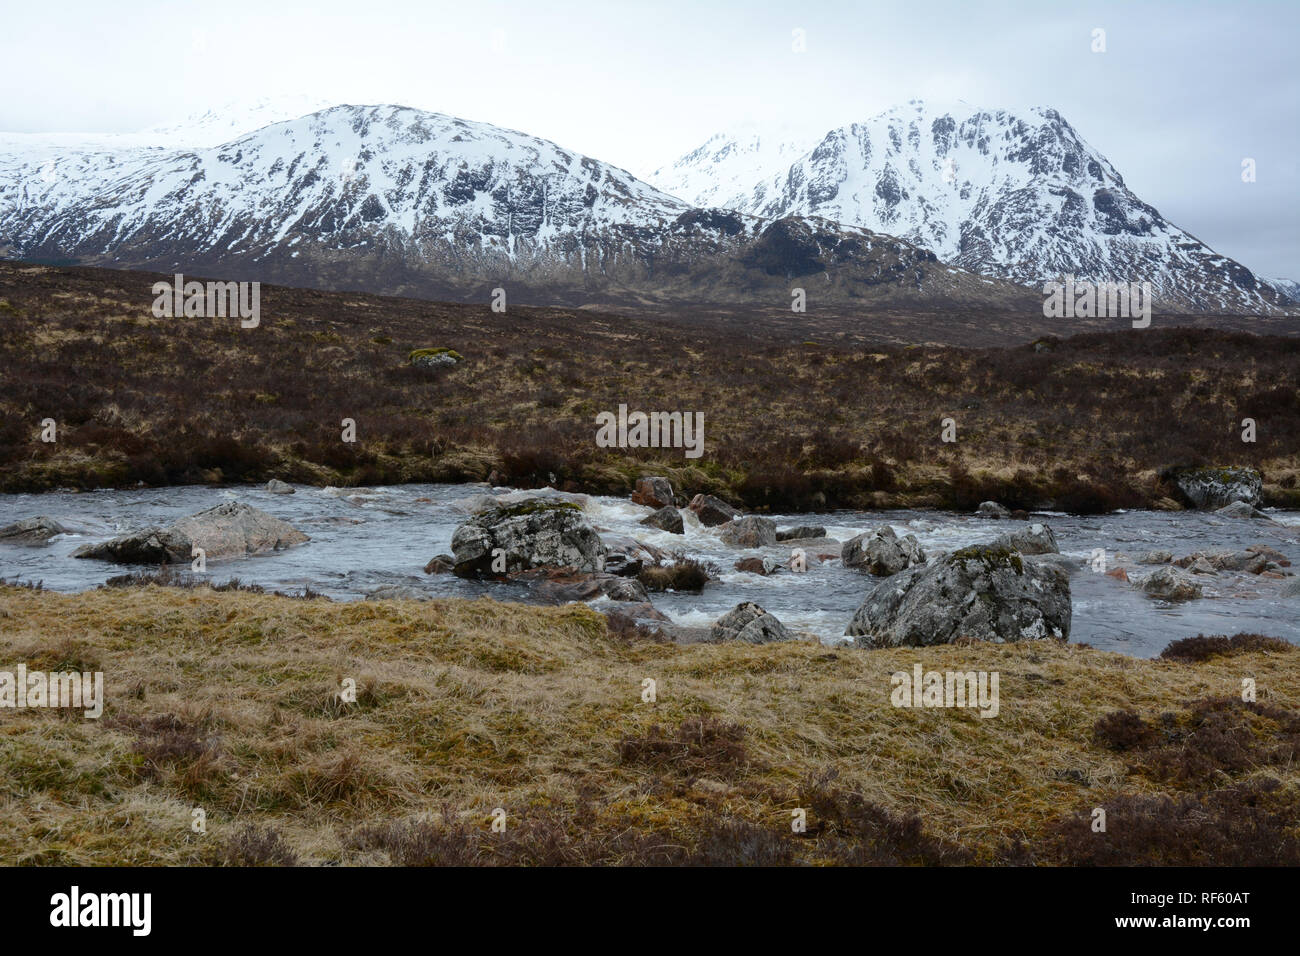 Il fiume Etive con le cime innevate delle Highlands scozzesi in background, Glencoe regione, Scotland, Regno Unito. Foto Stock